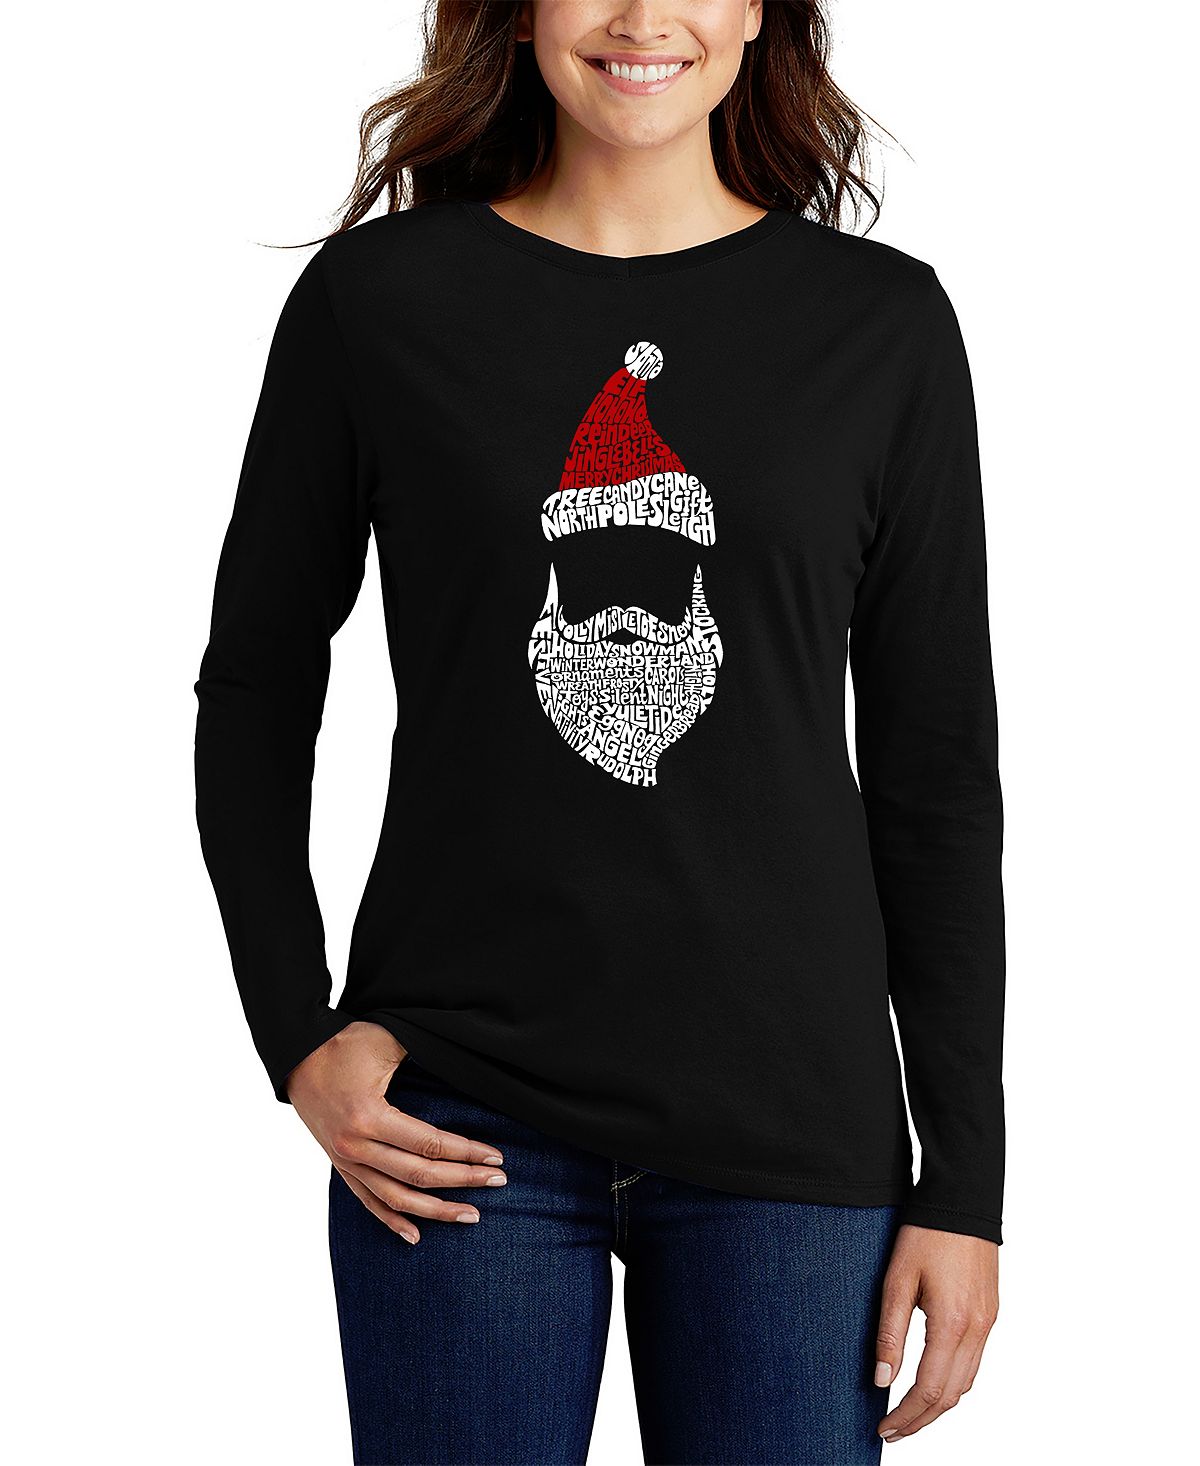 Женская футболка с длинным рукавом и надписью санта-клаус LA Pop Art, черный рождественские женские носки забавные носки с изображением санта клауса рождественской елки для девочек рождественский подарок 2021